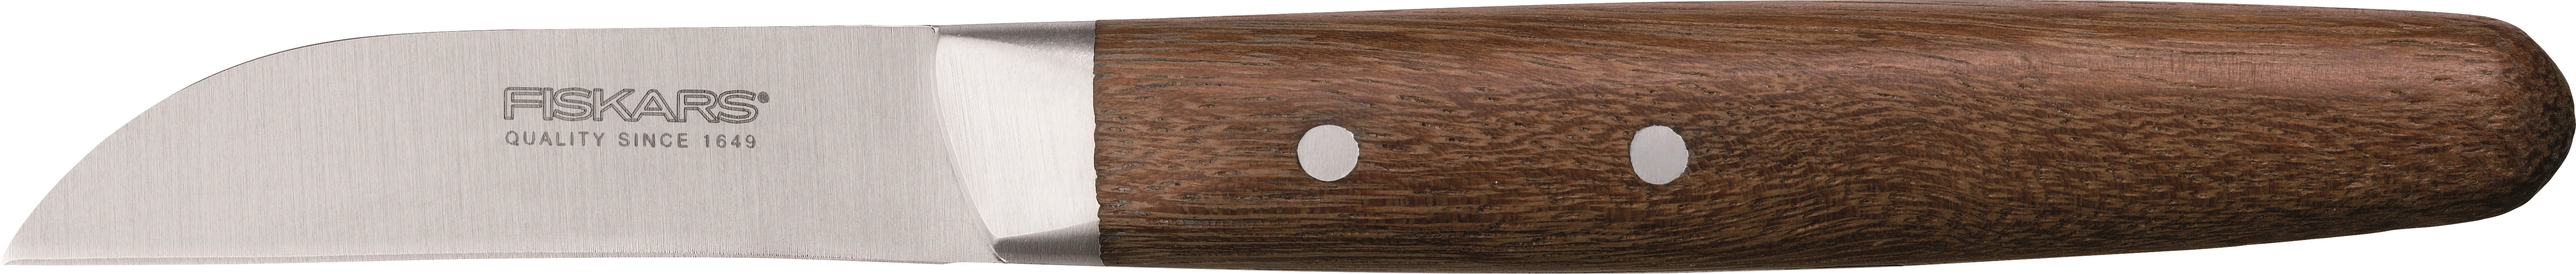 Fiskars urtekniv med træskaft, 6 cm